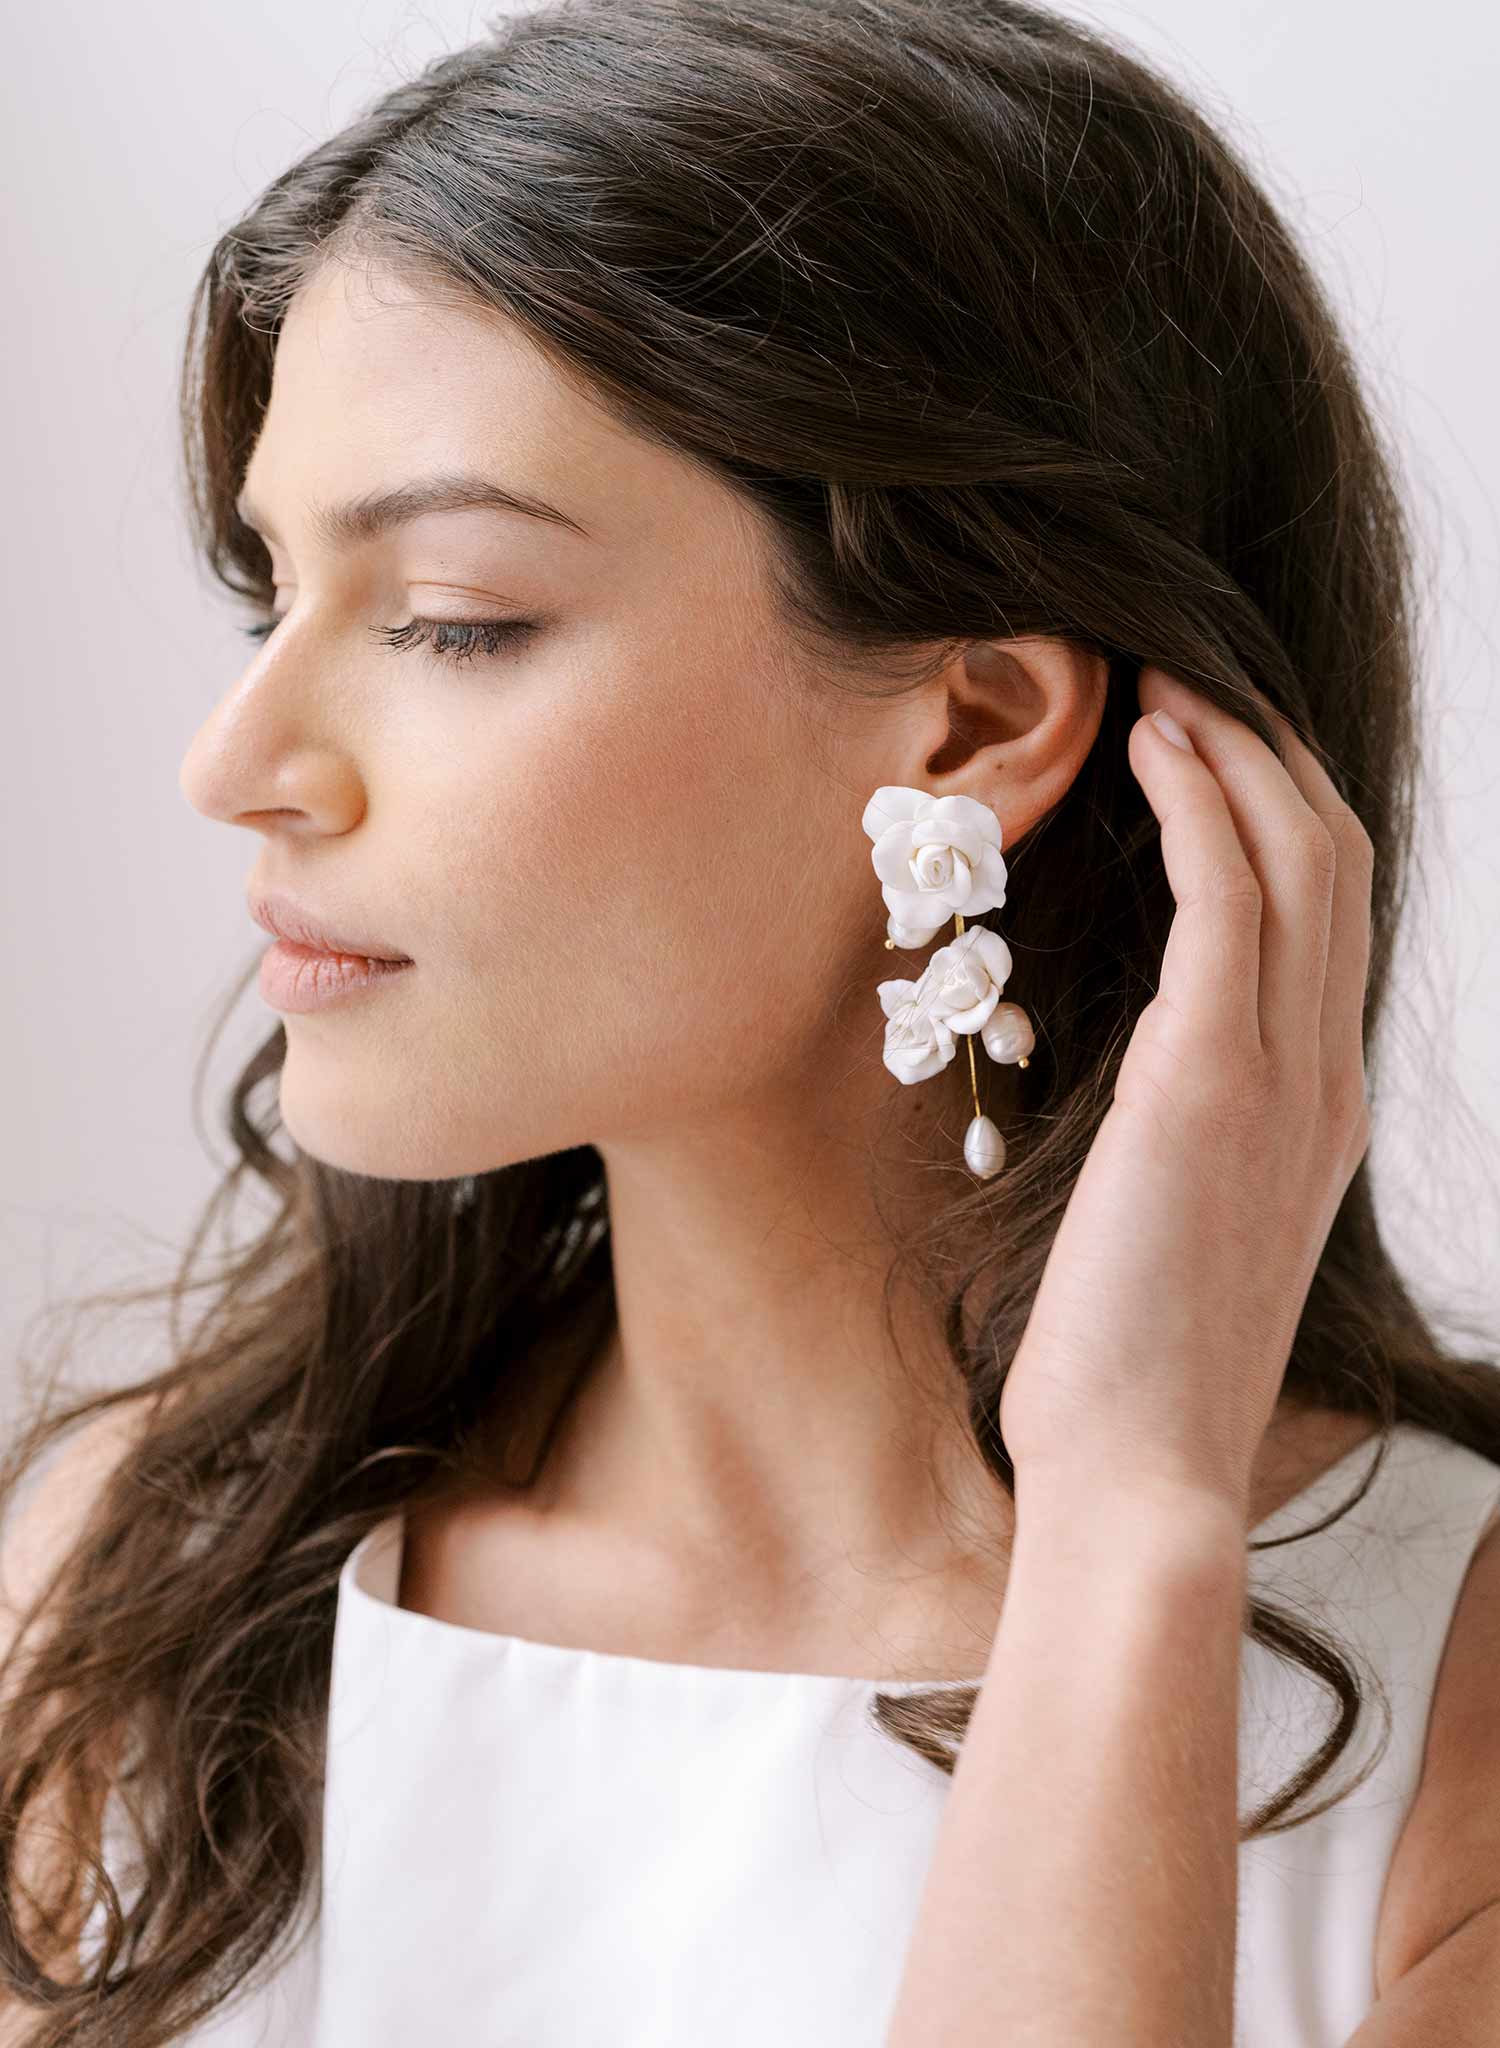 Handmade Bridal Earrings, Rose Earrings - Rose Blooms and Pearls Earrings - Style #2318